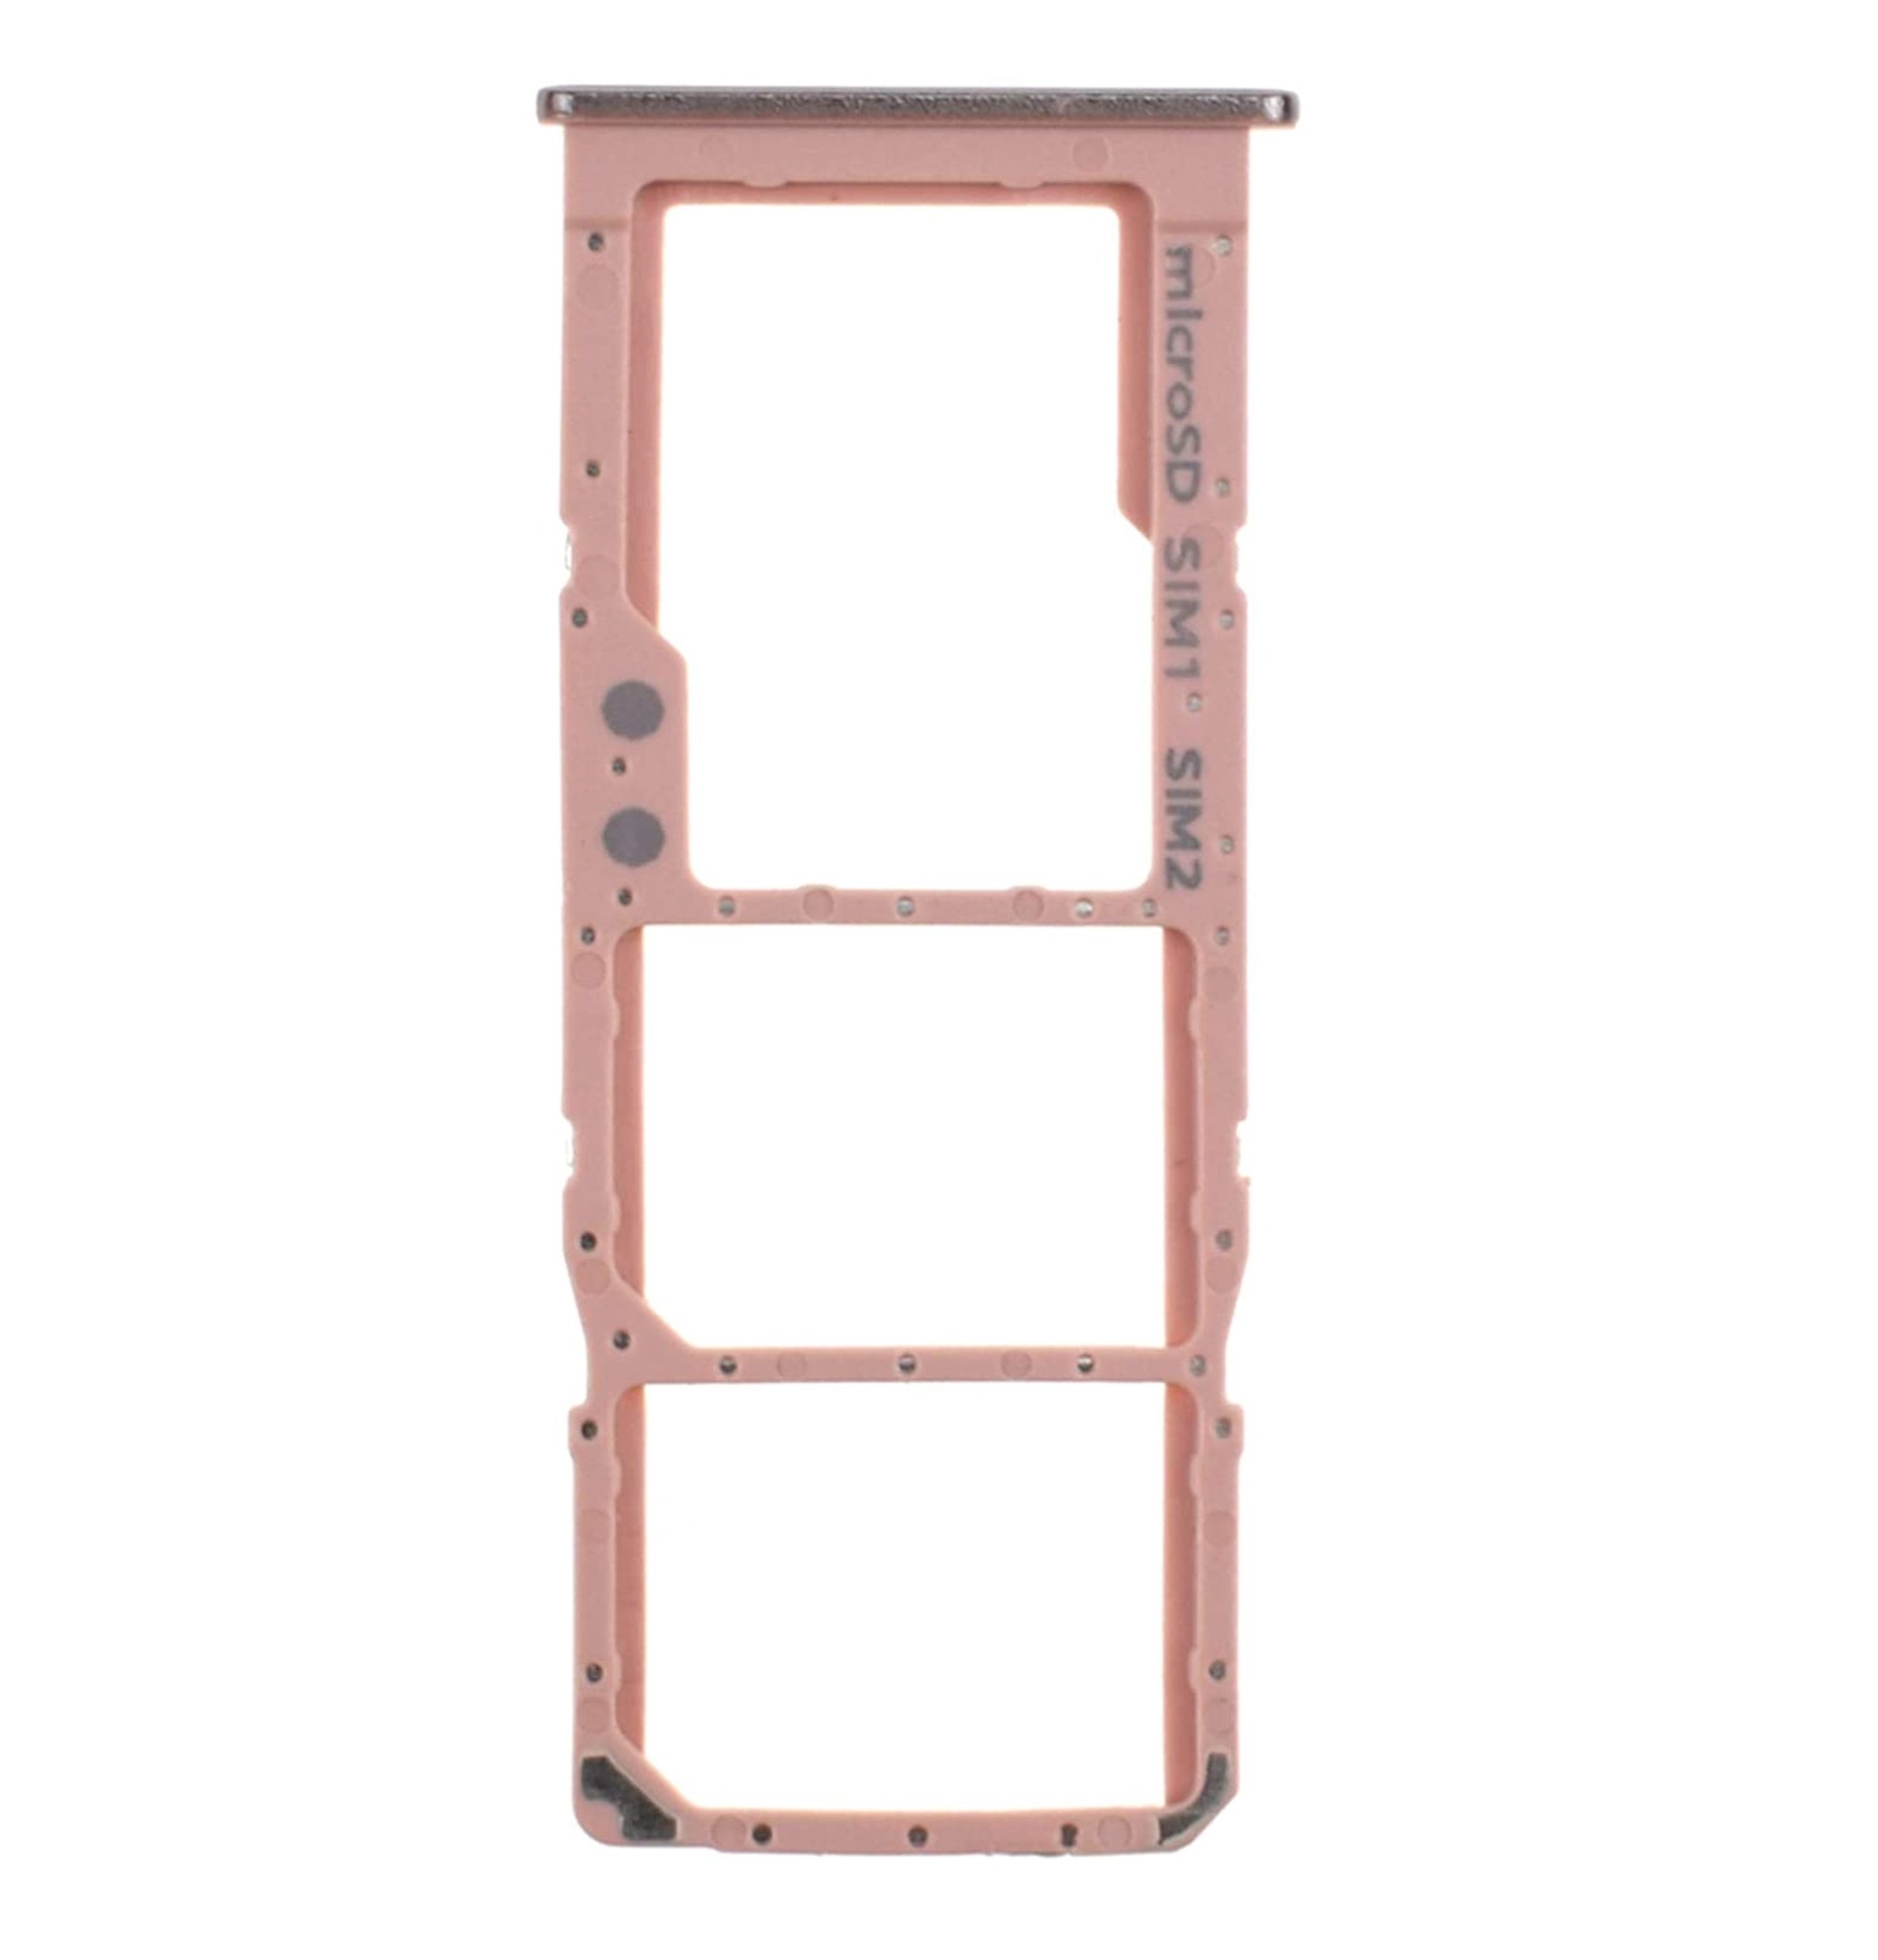 Galaxy A71 A715 SIM Tray in Pink